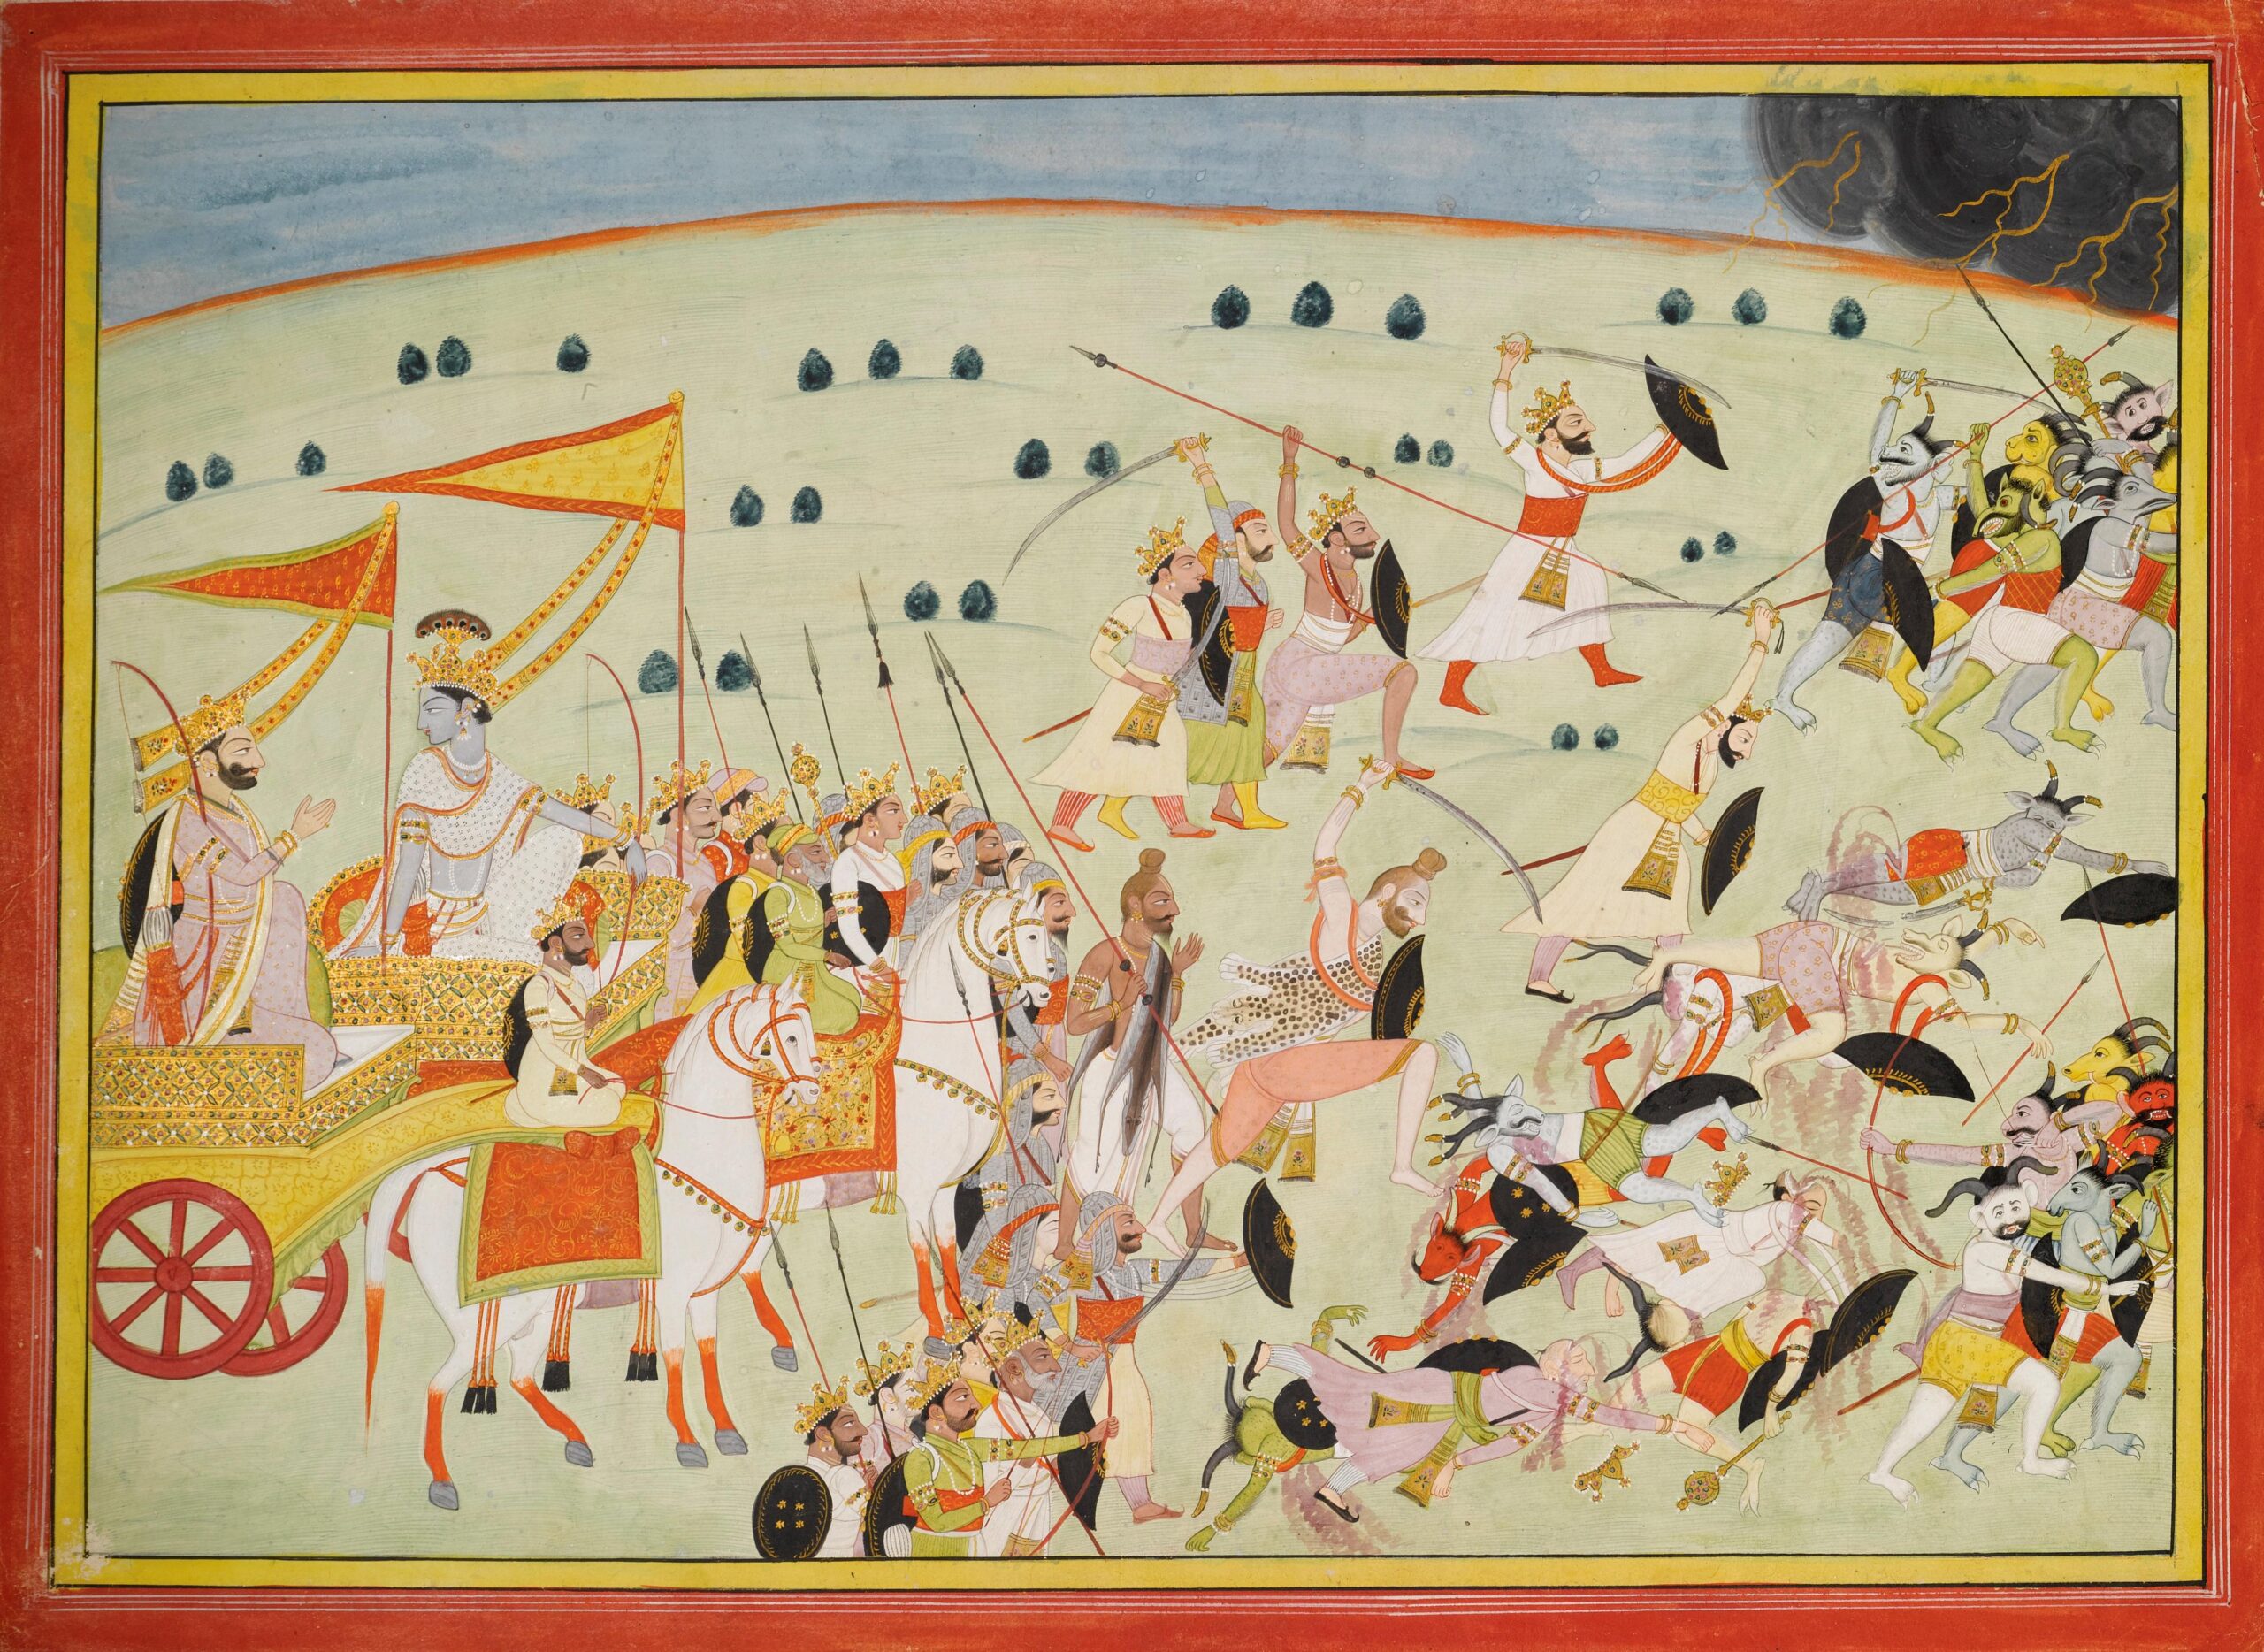 Arjuna, archer et chef de la famille des Pandavas, se retrouve au milieu du champ de bataille (Kurukshetra) où doivent s’affronter deux familles, les Pandavas et Kuravas, se disputant la possession de la ville céleste d’Hastinapura. 